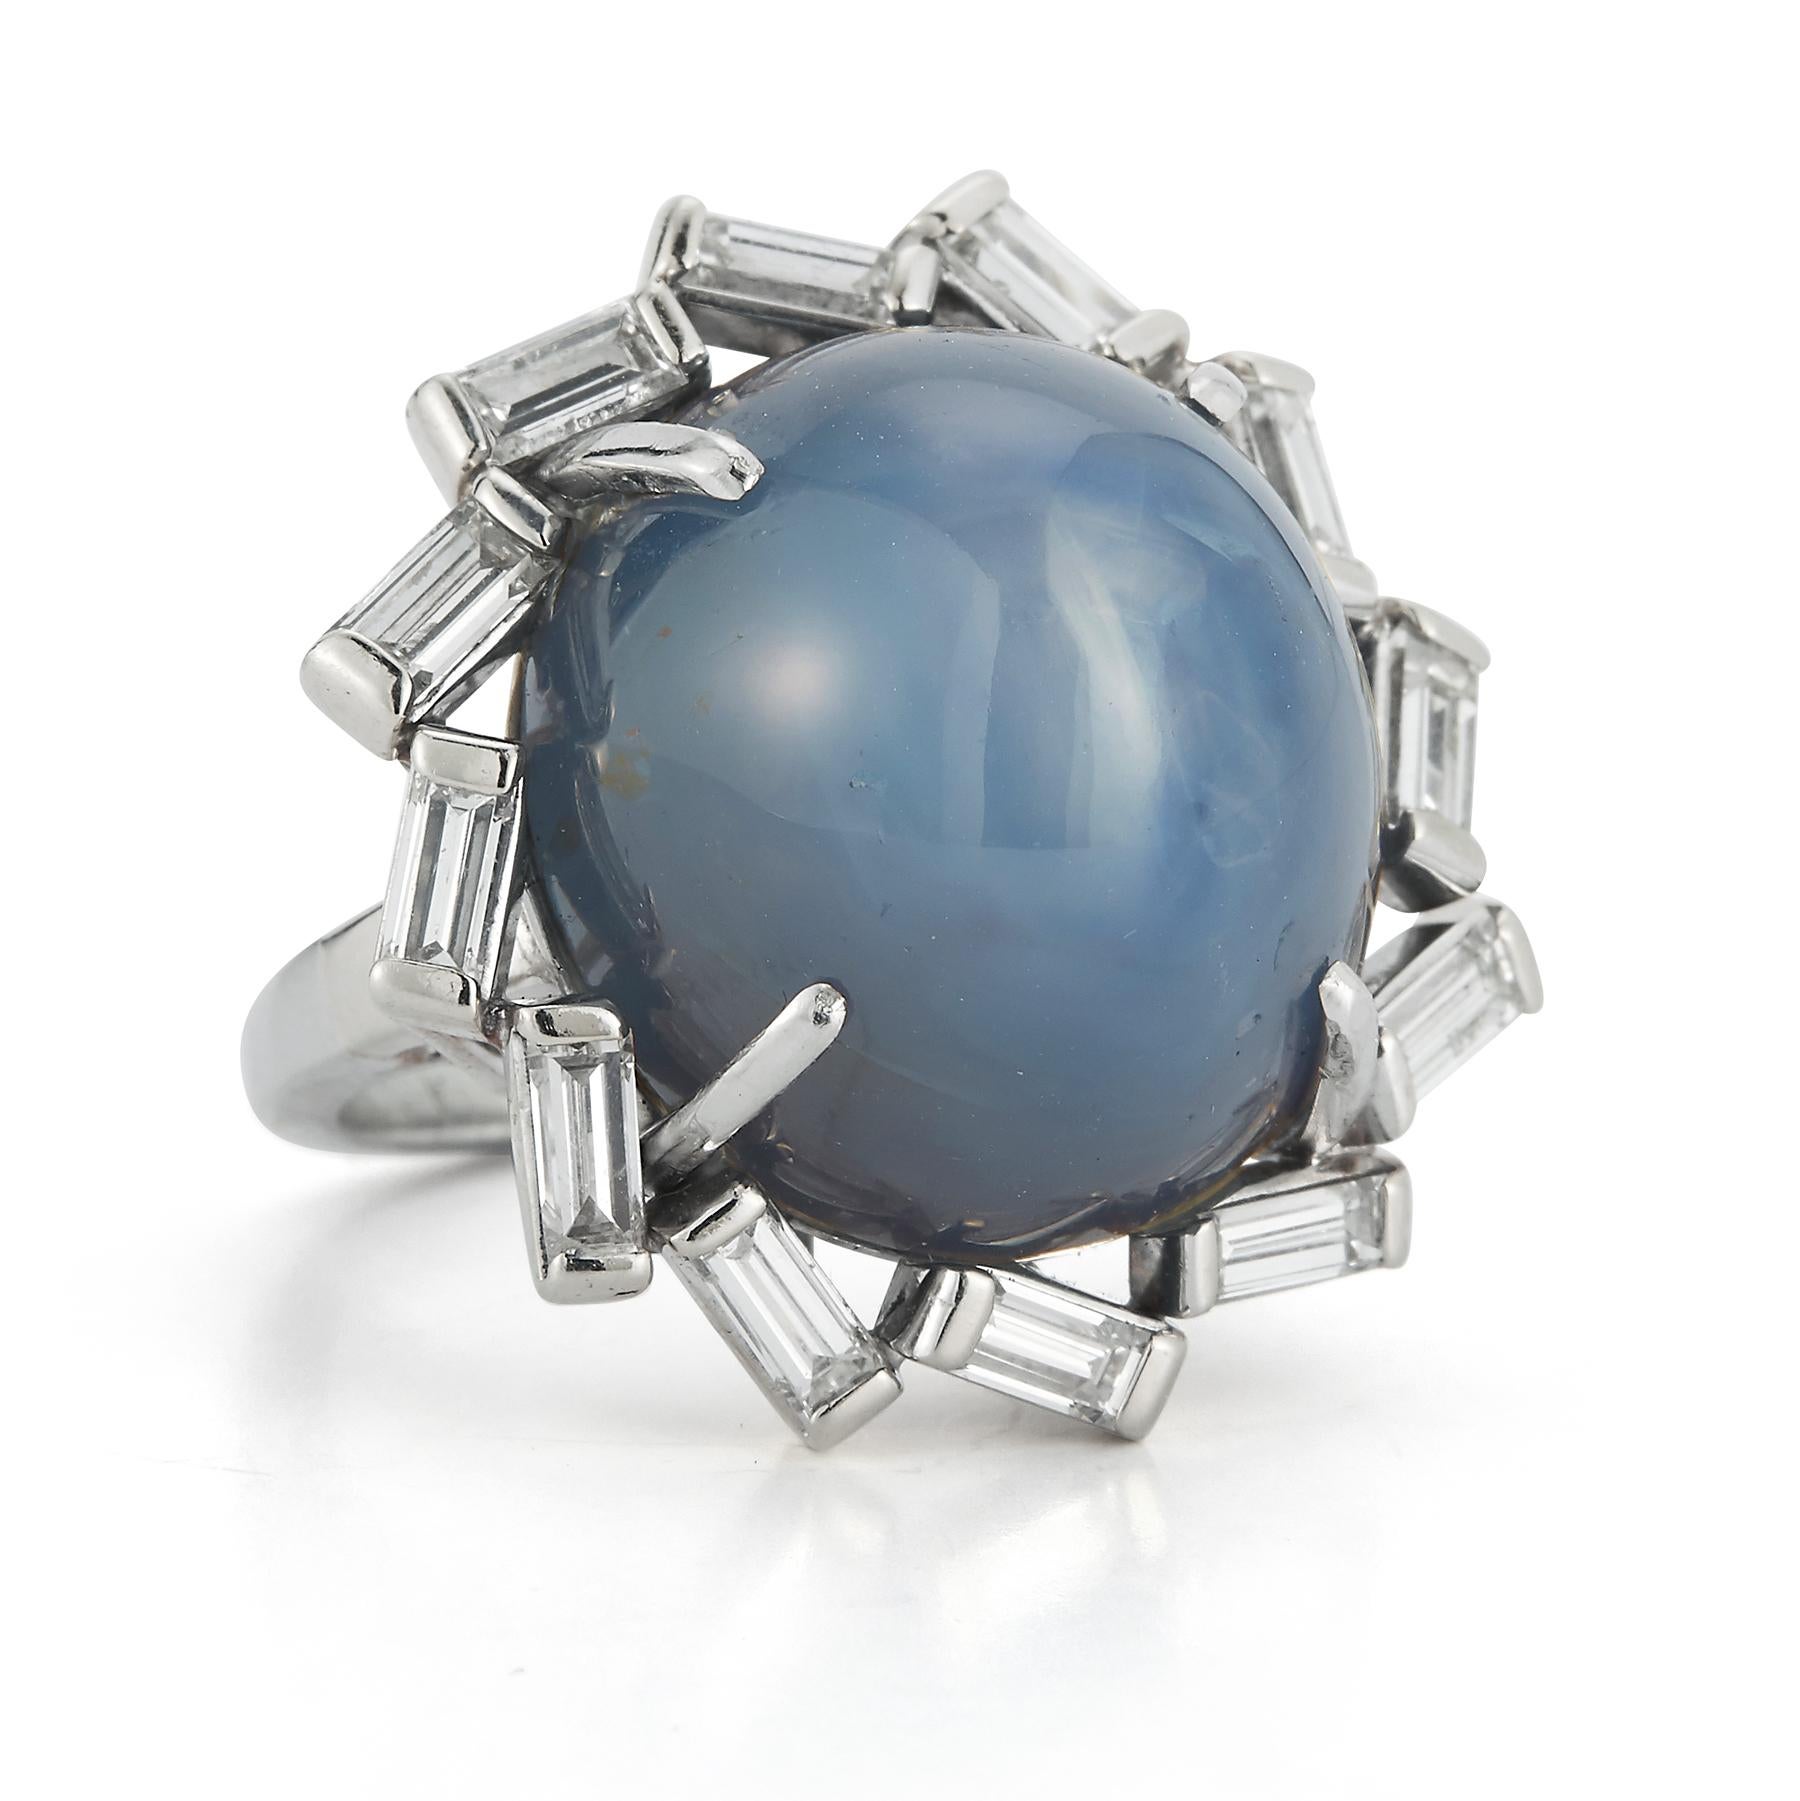 AGL Certified Star Sapphire & Diamond Ring, Ein 52,37 ct Cabochon Sternsaphir umgeben von 12 Diamanten im Baguetteschliff

Ringgröße: 6

Kostenlose Größenanpassung 

Metall-Typ: Platin